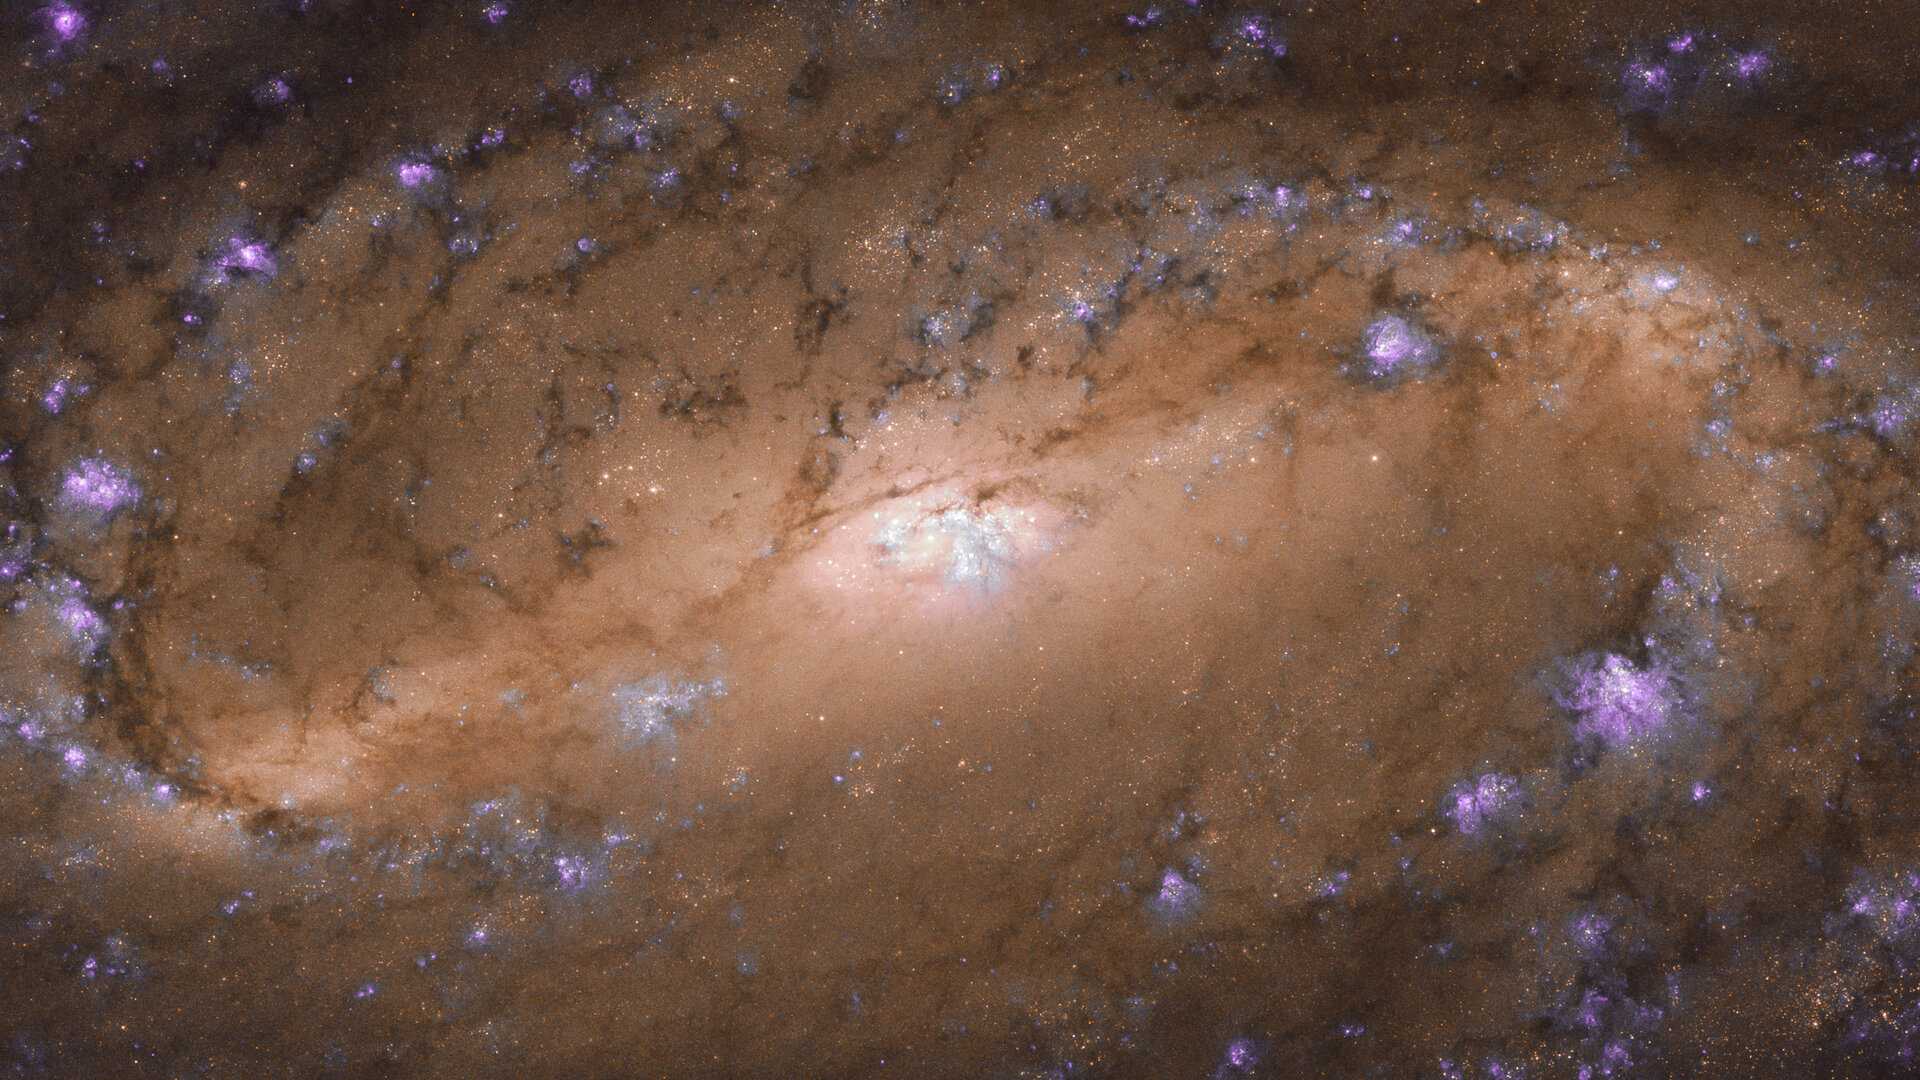 Poucos objetos no Universo são tão icônicos quanto as galáxias espirais. Monopolizando os holofotes, elas combinam braços giratórios, estrelas cintilantes, explosões brilhantes de gás e faixas escuras de poeira cósmica. Esta é NGC 2903, que está localizada a cerca de 30 milhões de anos-luz de distância, na Constelação de Leão. Ela foi estudada em meio a uma pesquisa sobre as regiões centrais de aproximadamente 145 galáxias. O estudo teve como objetivo entender melhor a relação entre os buracos negros nos núcleos de galáxias, seus bulbos, estrelas, gás e poeira que seguem a formação típica que se vê nesta imagem